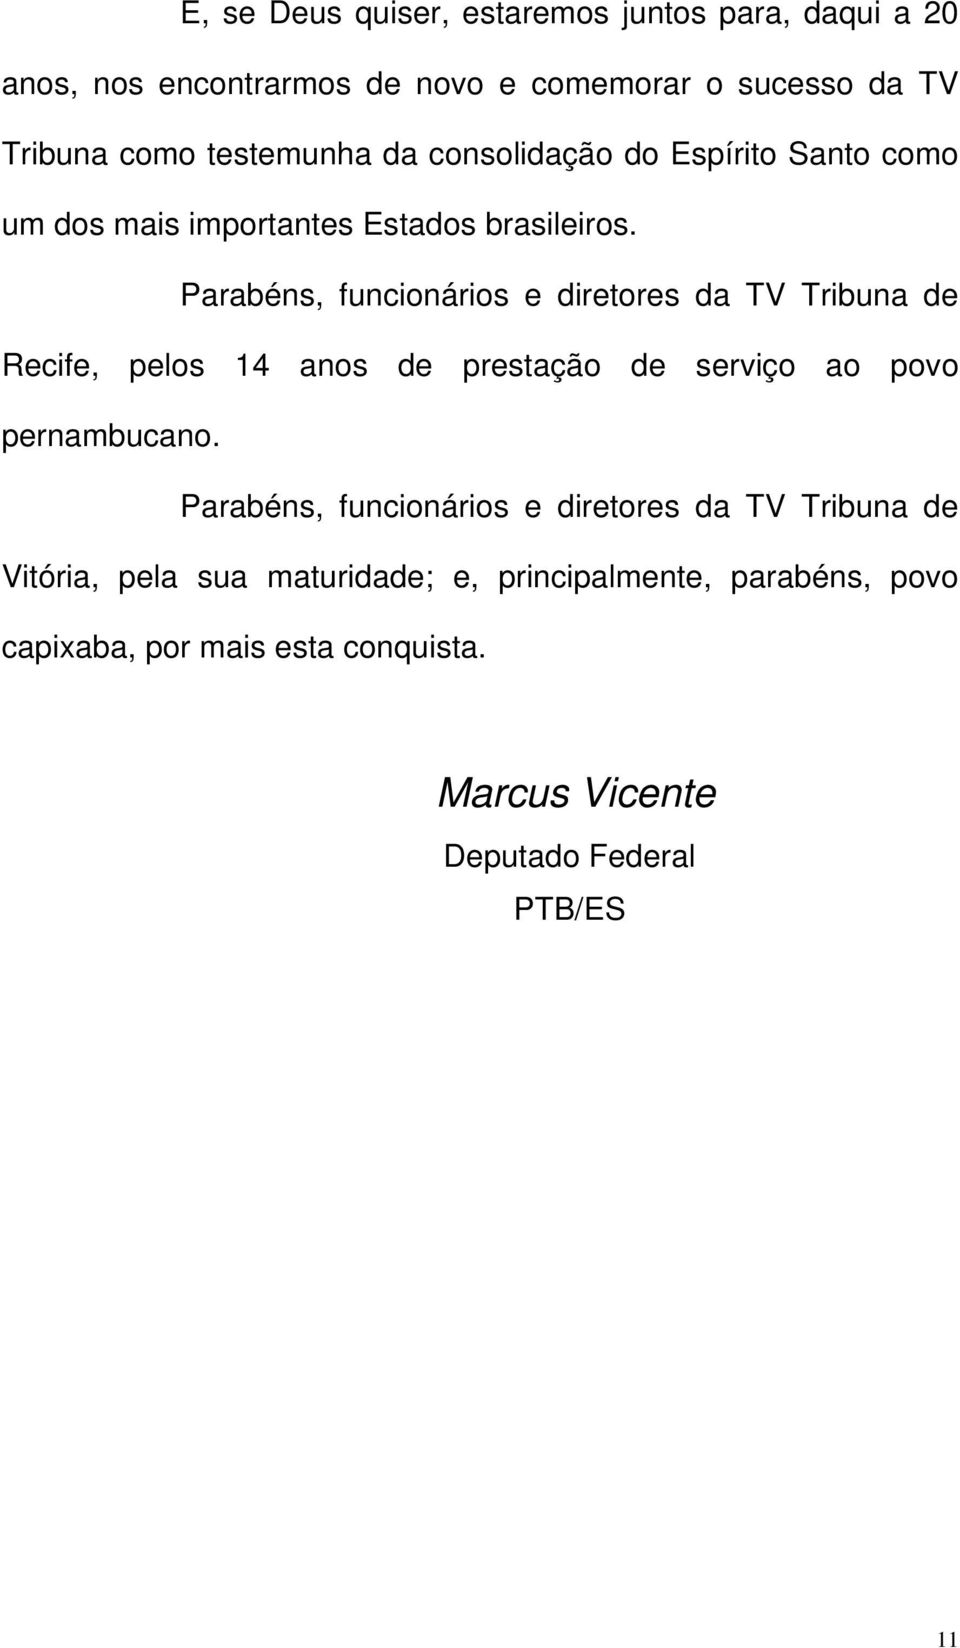 Parabéns, funcionários e diretores da TV Tribuna de Recife, pelos 14 anos de prestação de serviço ao povo pernambucano.